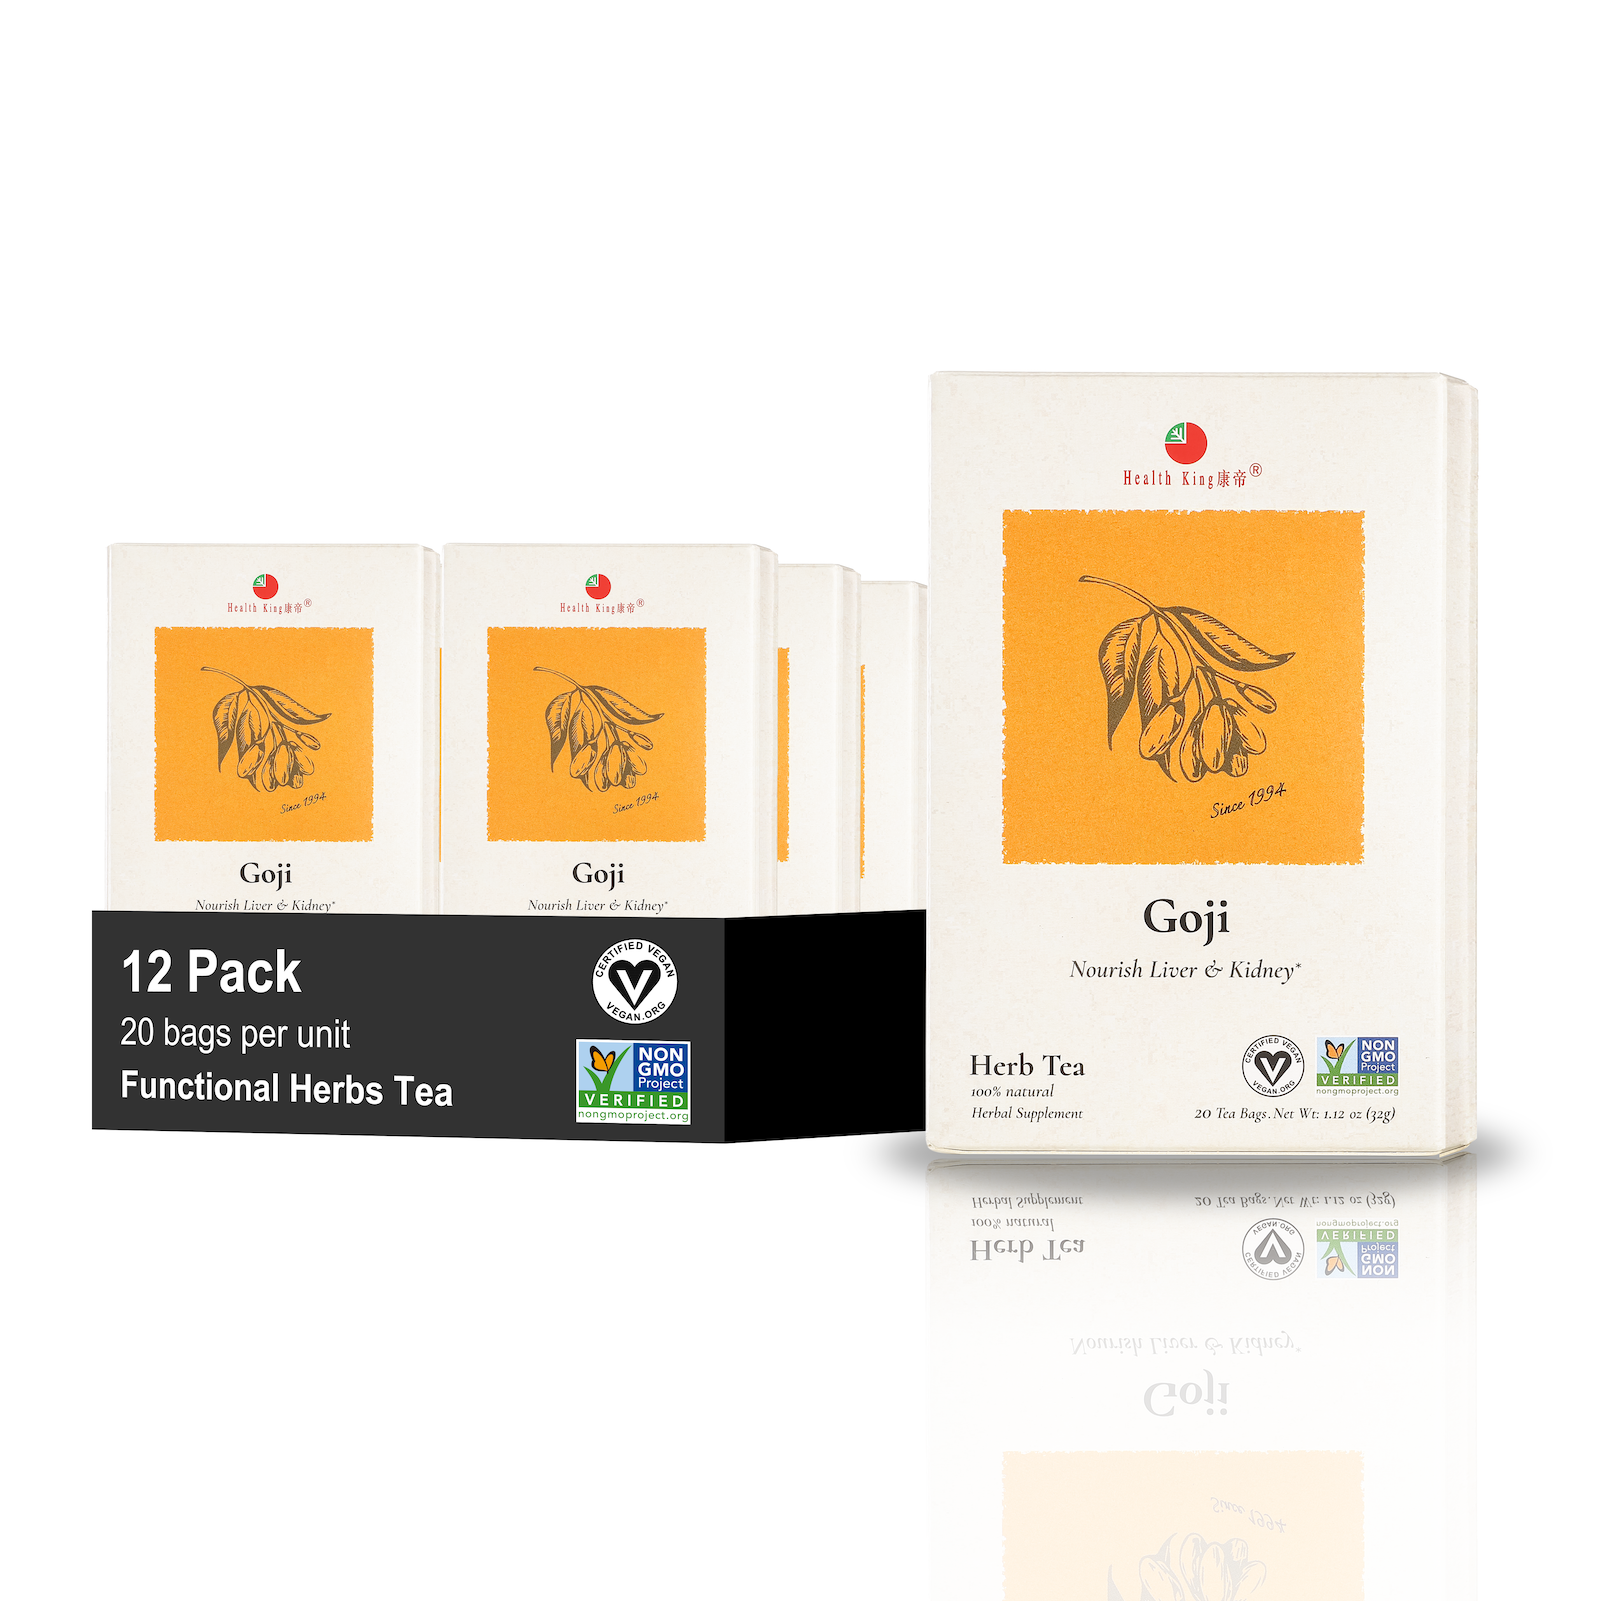 Twelve-pack of Goji Herb Tea highlighting its organic ingredients